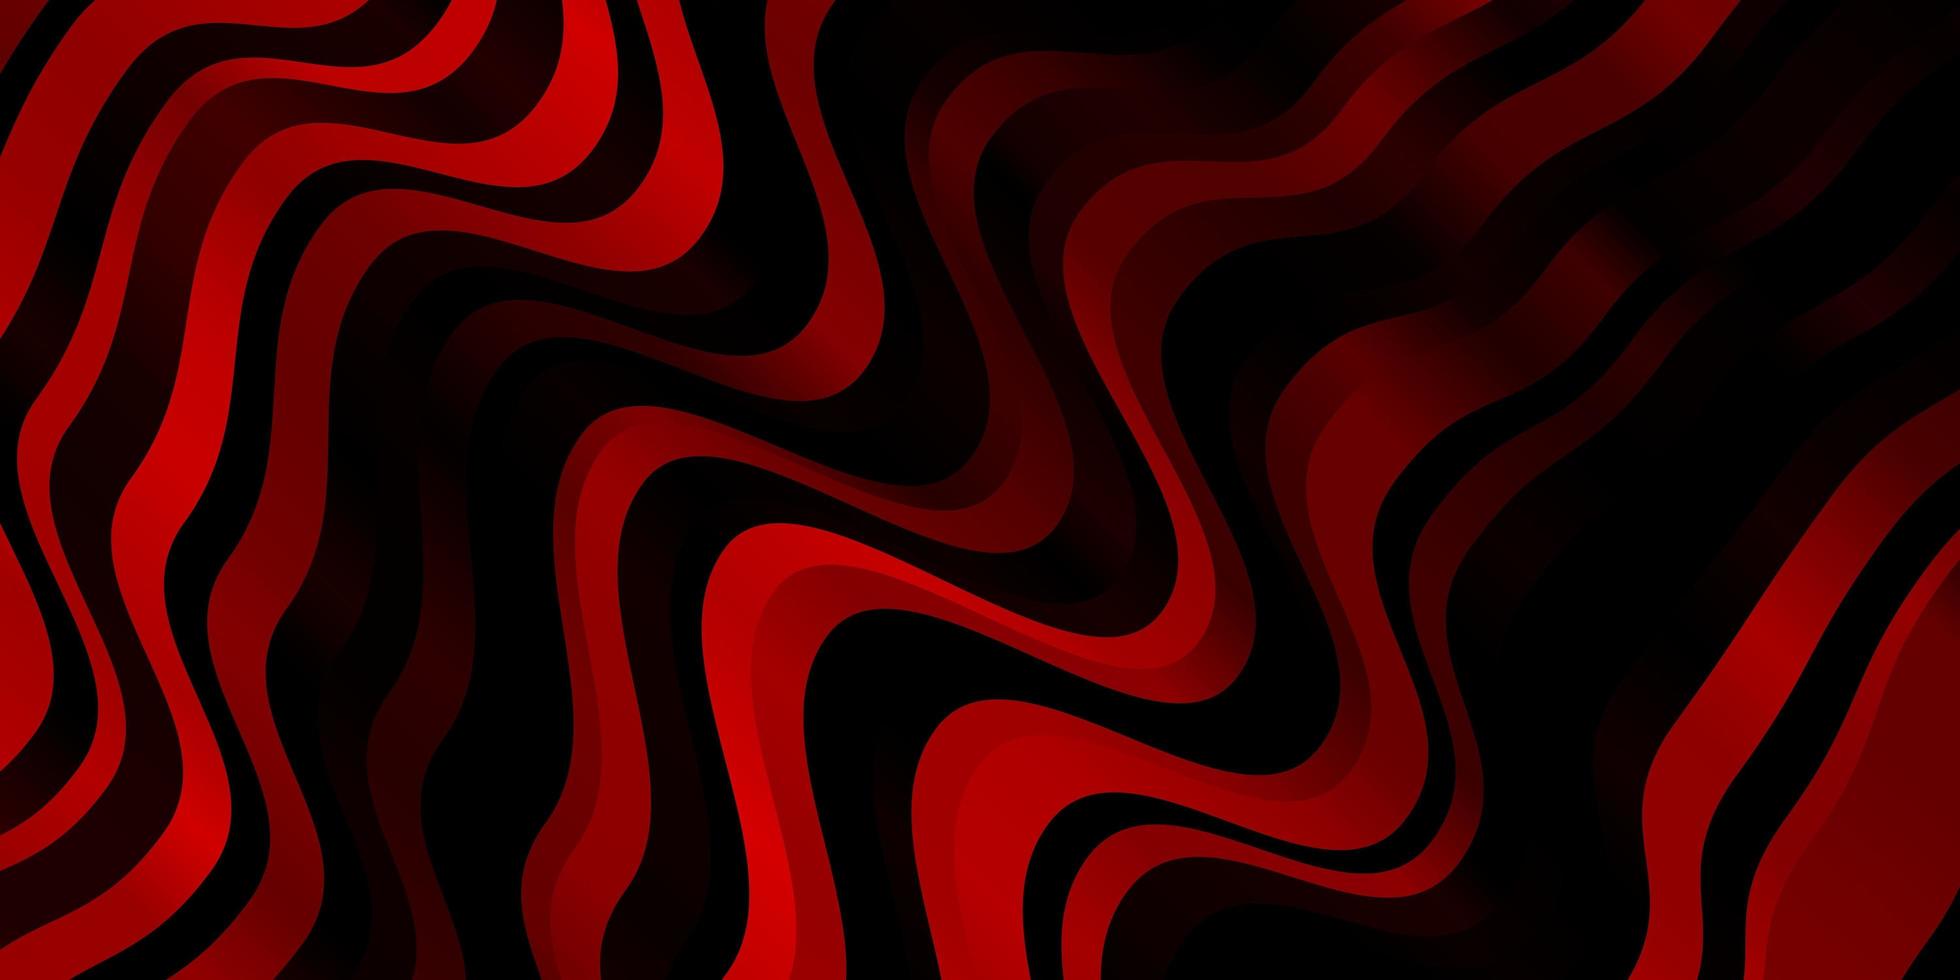 mörk röd vektor bakgrund med böjda linjer färgglada illustration som består av kurvor mönster för broschyrer broschyrer